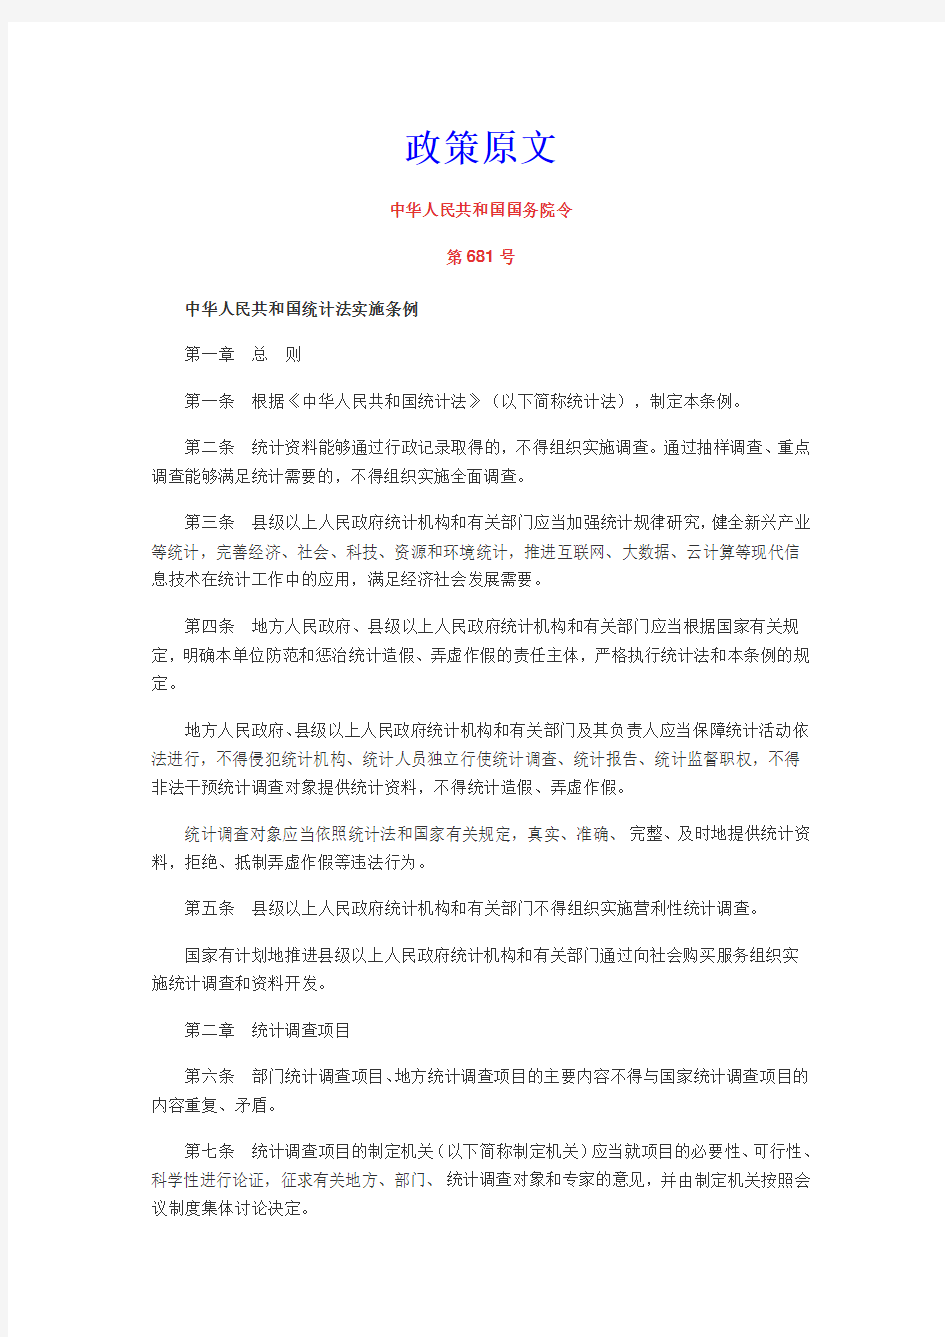 《中华人民共和国统计法实施条例》解读及政策原文